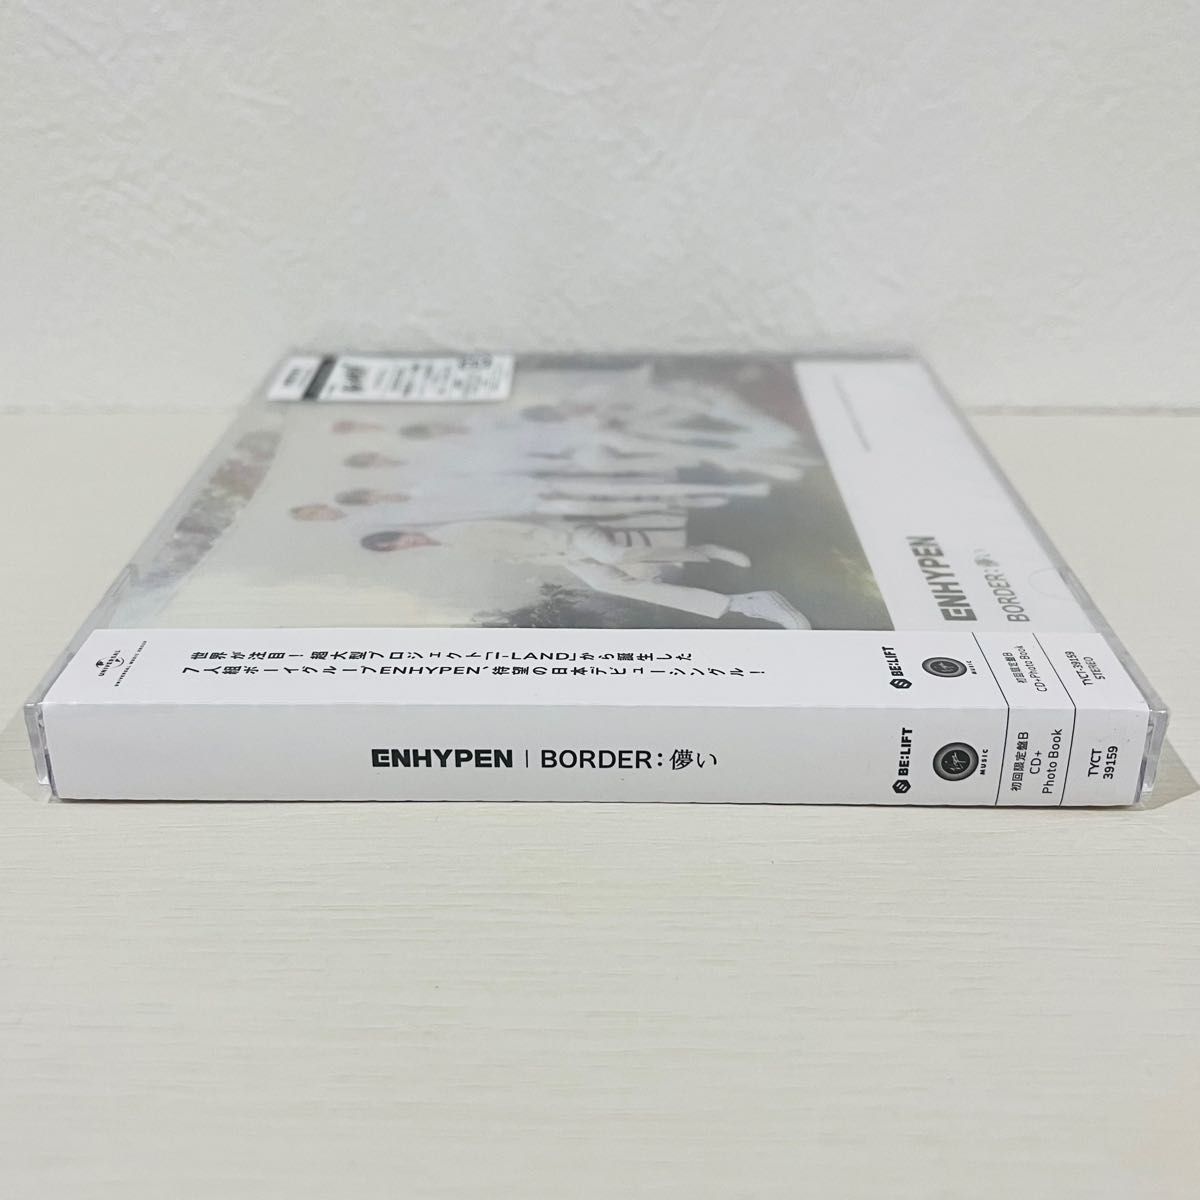 未開封 ENHYPEN BORDER:儚い 初回限定盤B CD+フォトブック 韓国 アイドル K-POP